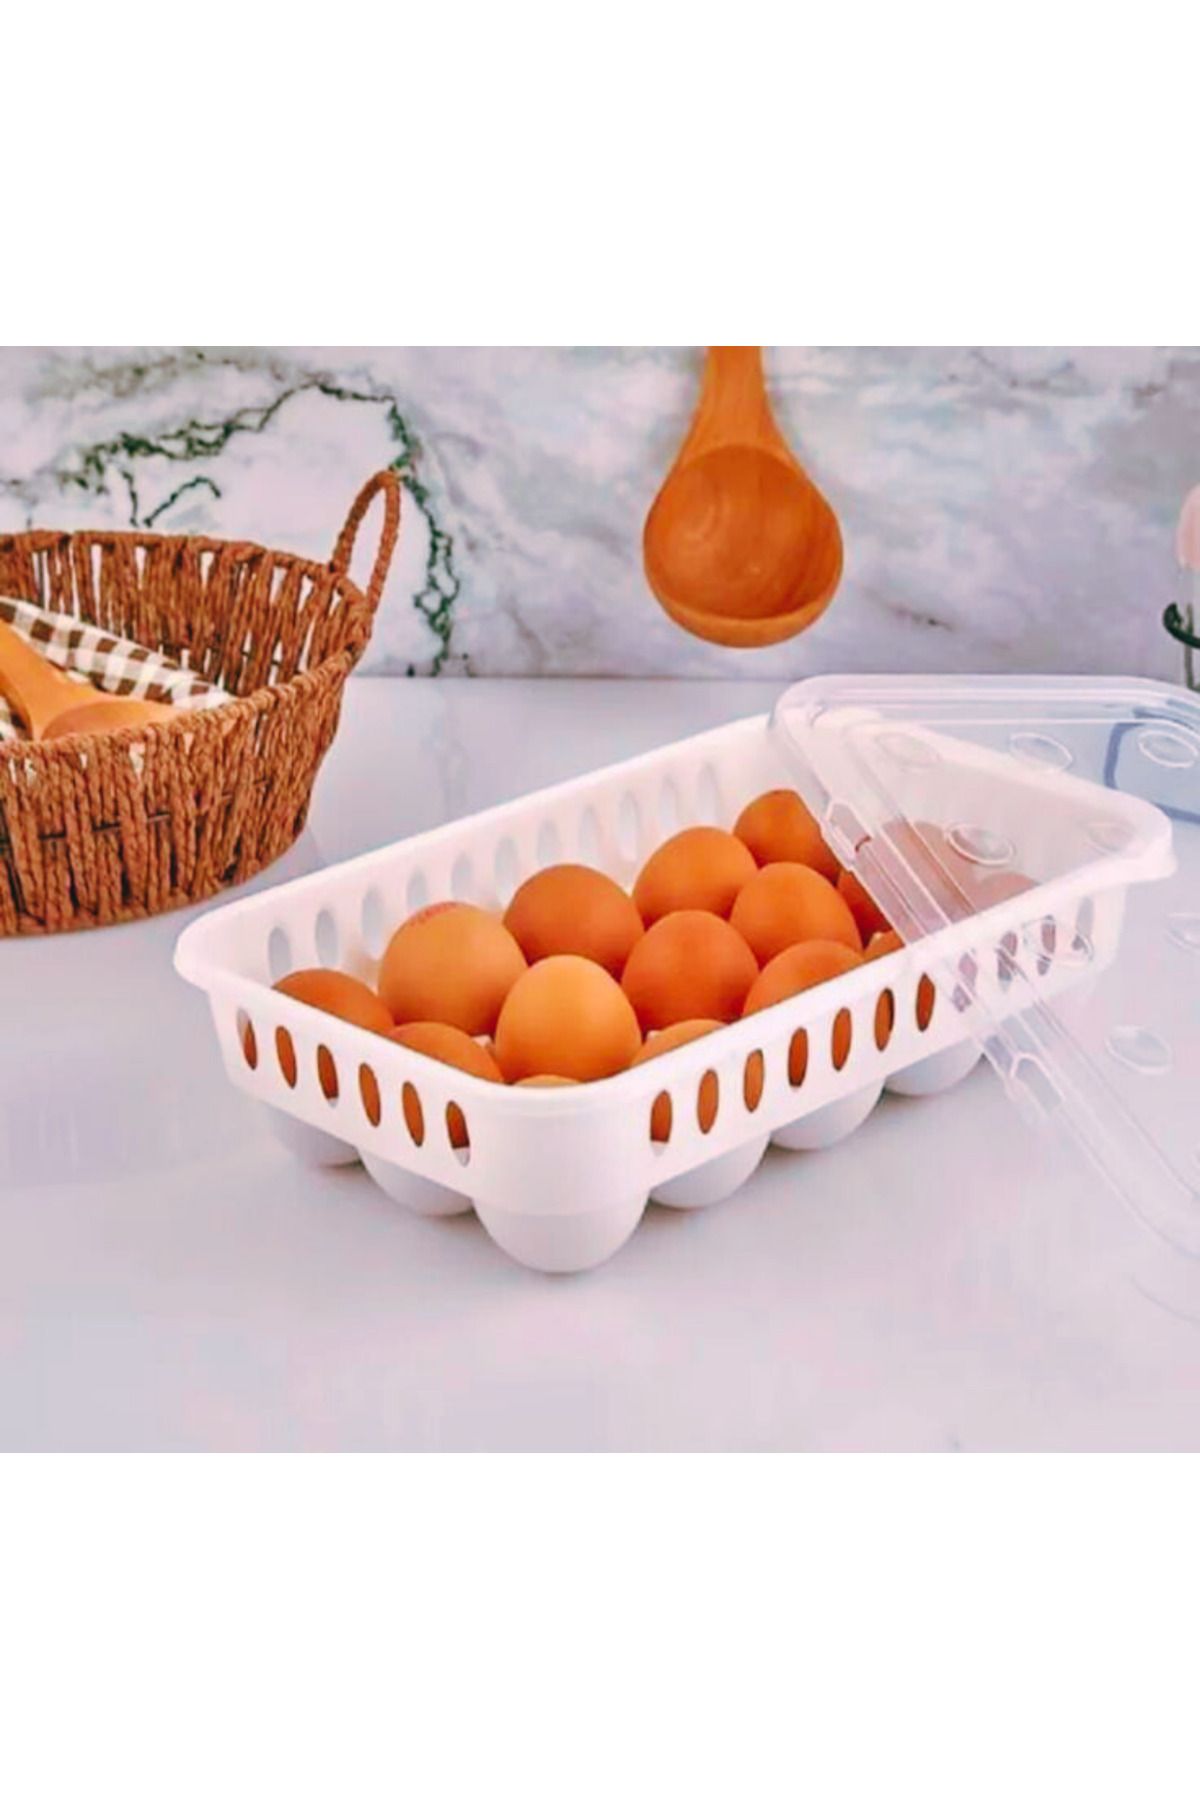 ESNAFDEDE Yumurta Saklama Kabı 15'li 1 Adet, Steril Yumurtalık, Kapaklı Yumurta Organizeri Bpa Free